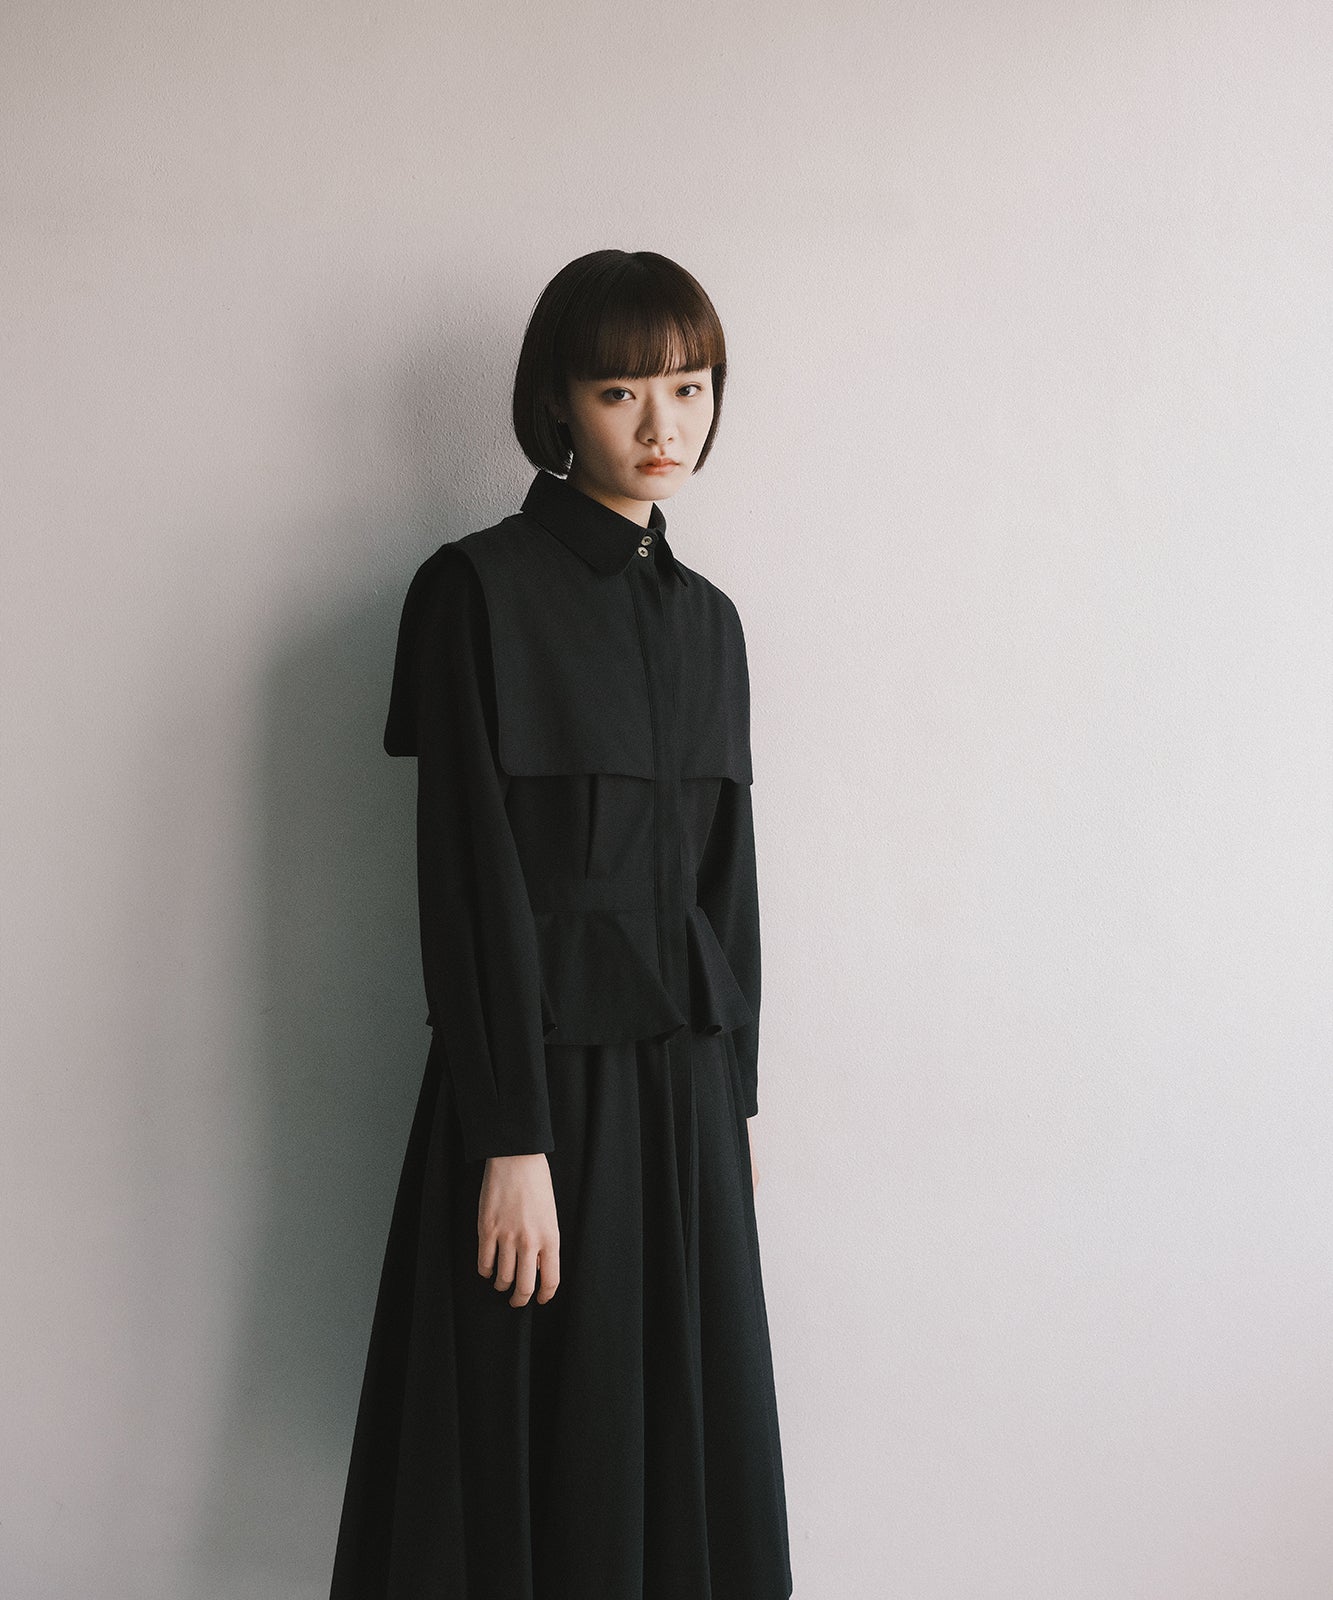 ≪在庫販売≫【THE DRESS #39】- black peplum dress -（ブラック ペプラムドレス）≪2022年11月23日21:00≫